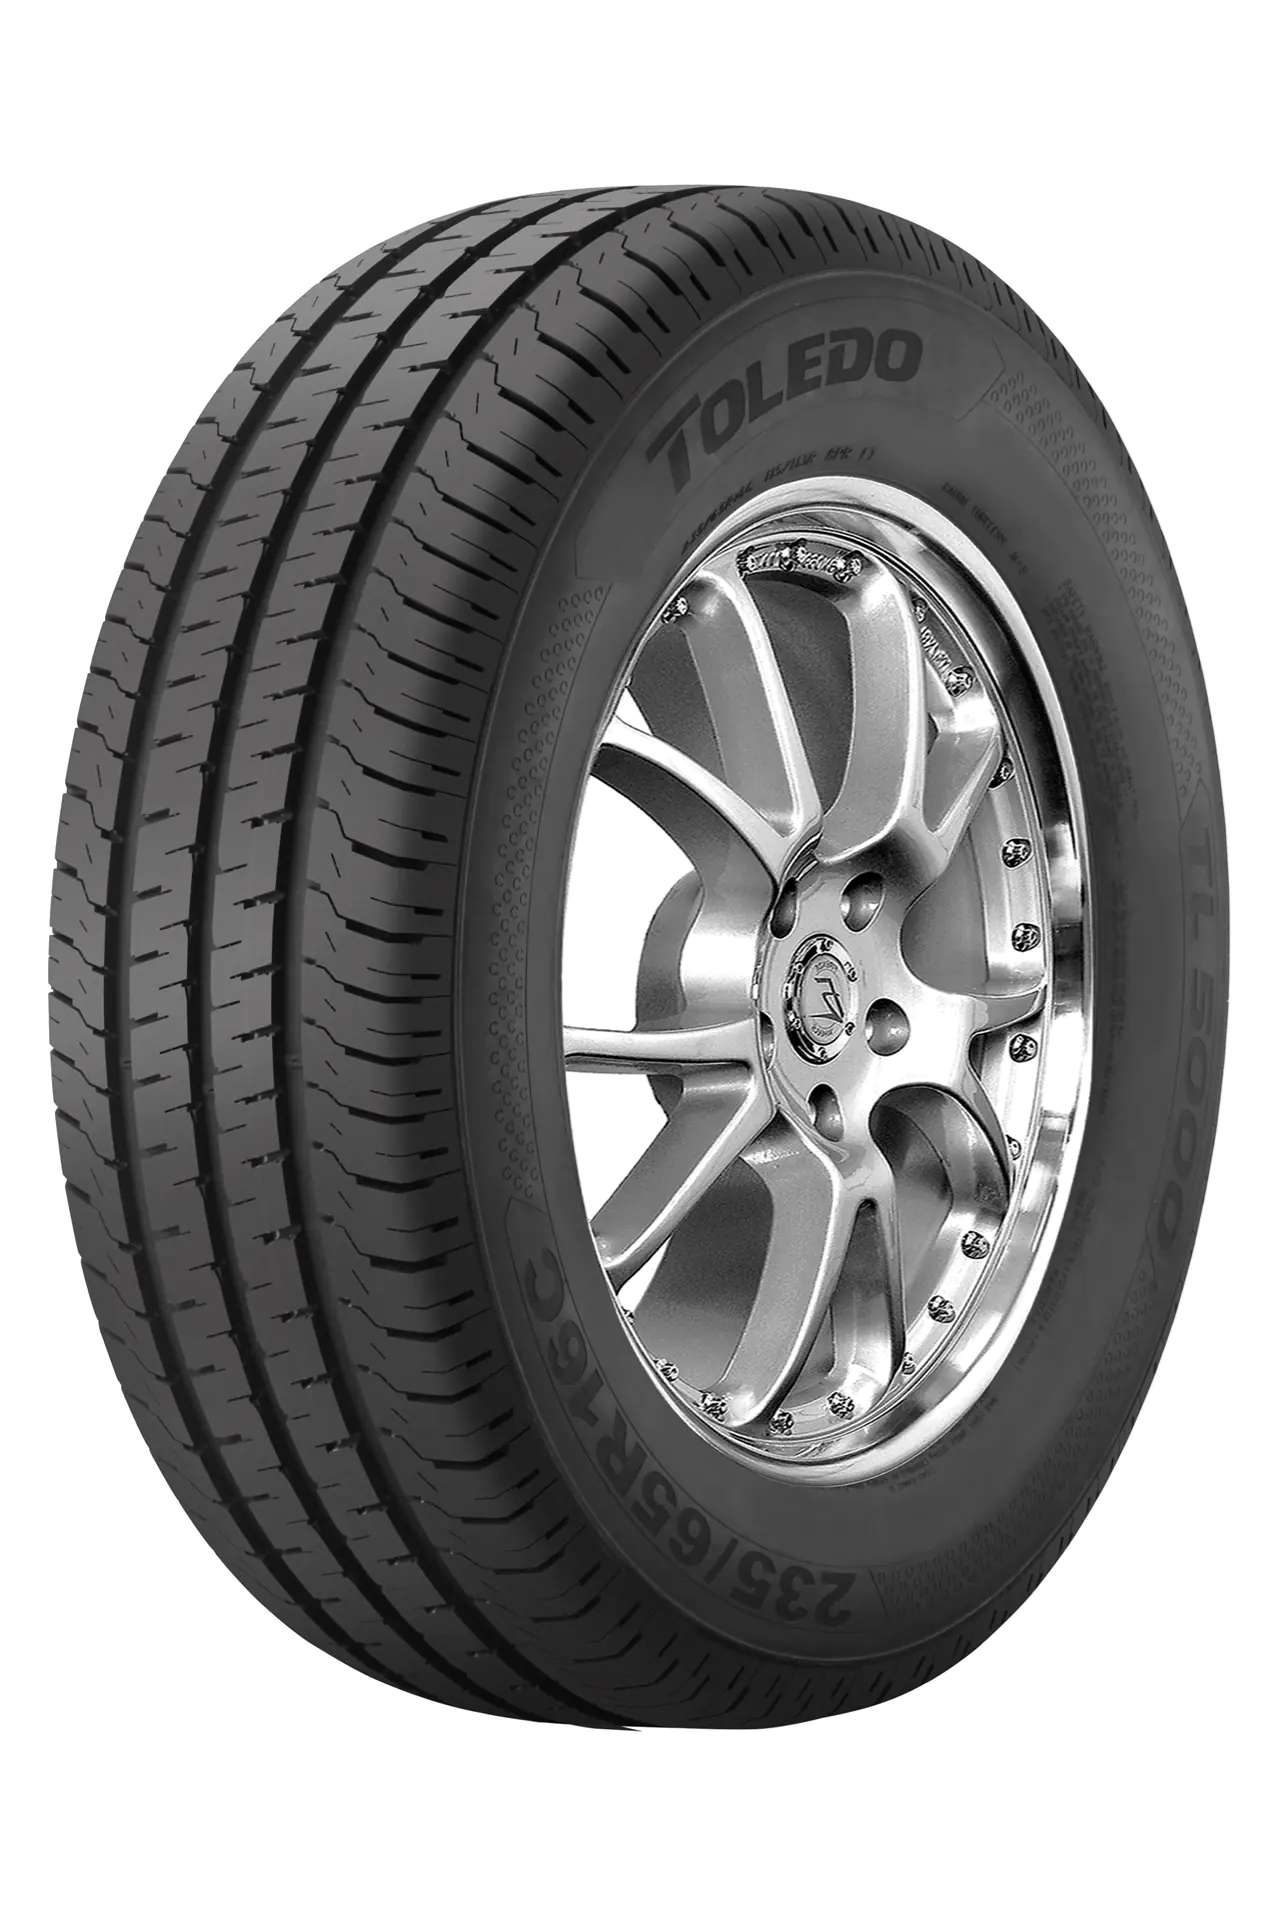 Toledo Toledo 165/80 R13C 94R TL5000 pneumatici nuovi Estivo 